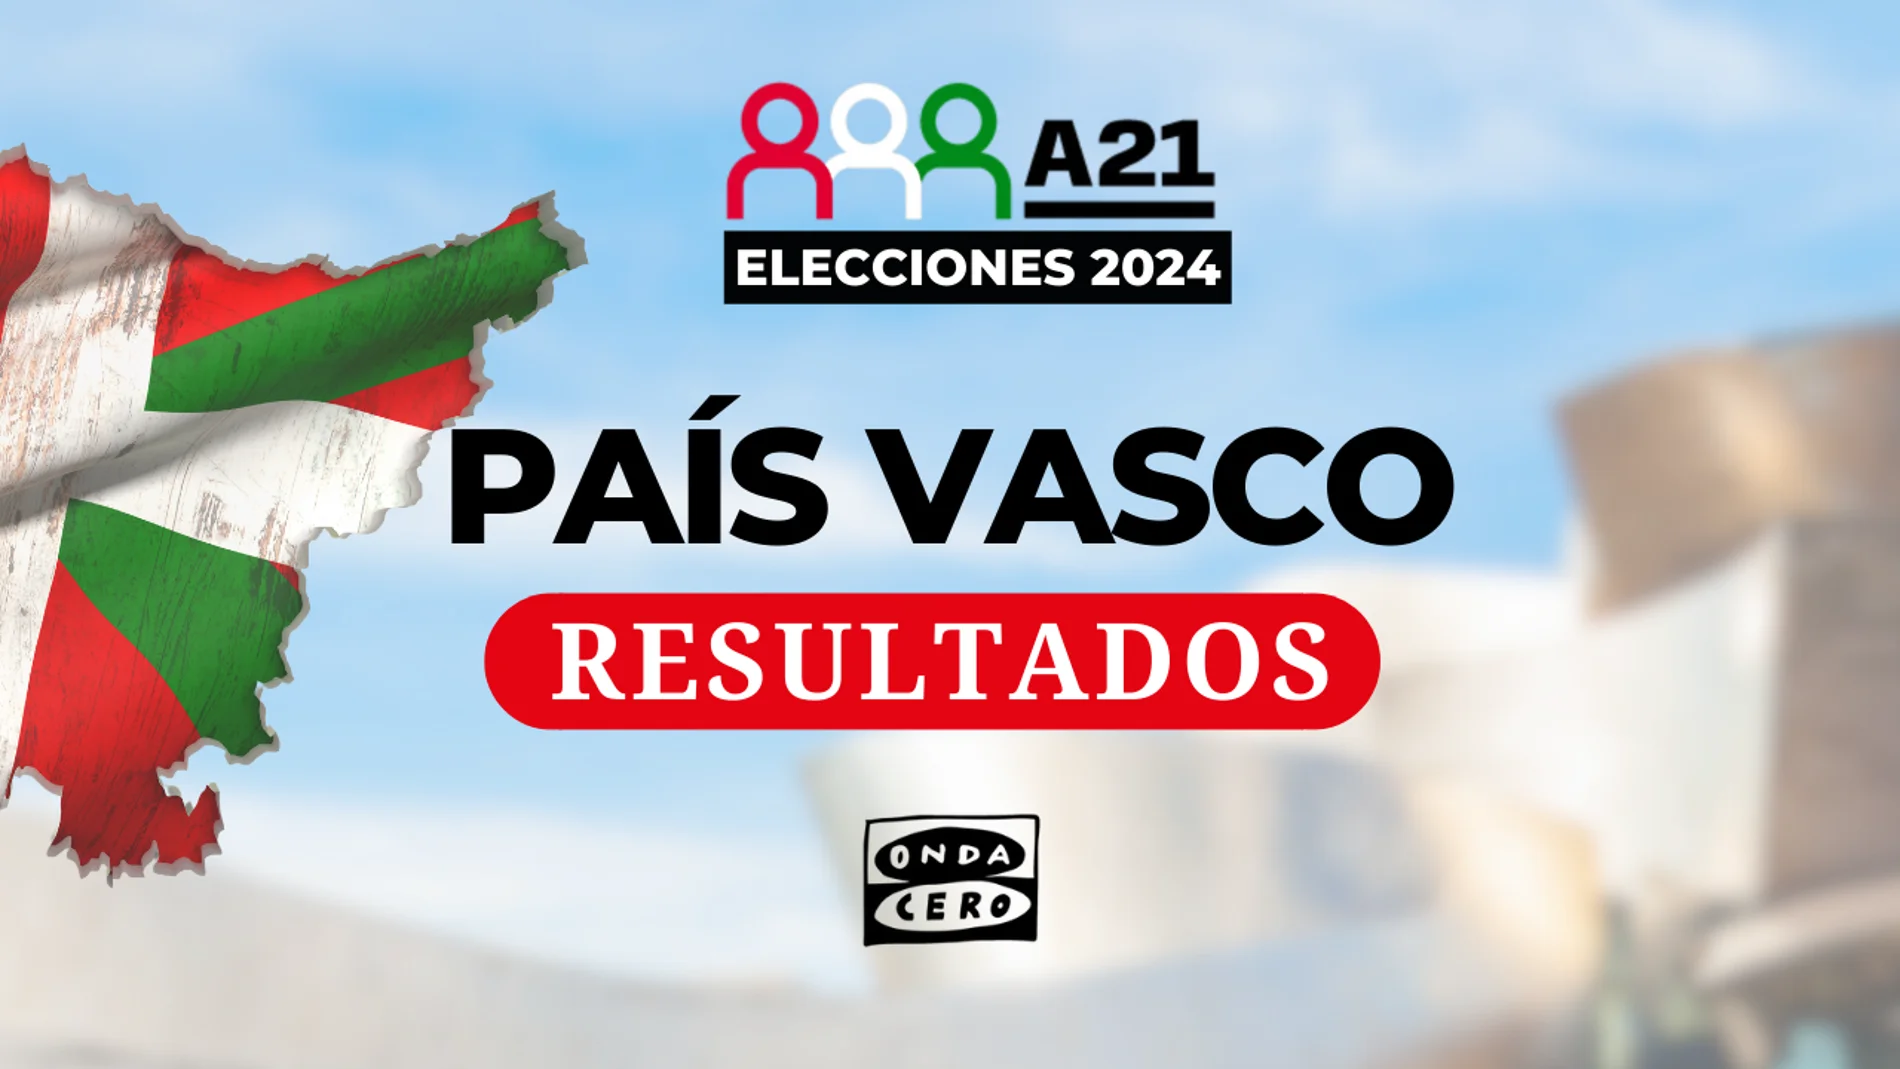 Resultados en las elecciones del País Vasco 2024